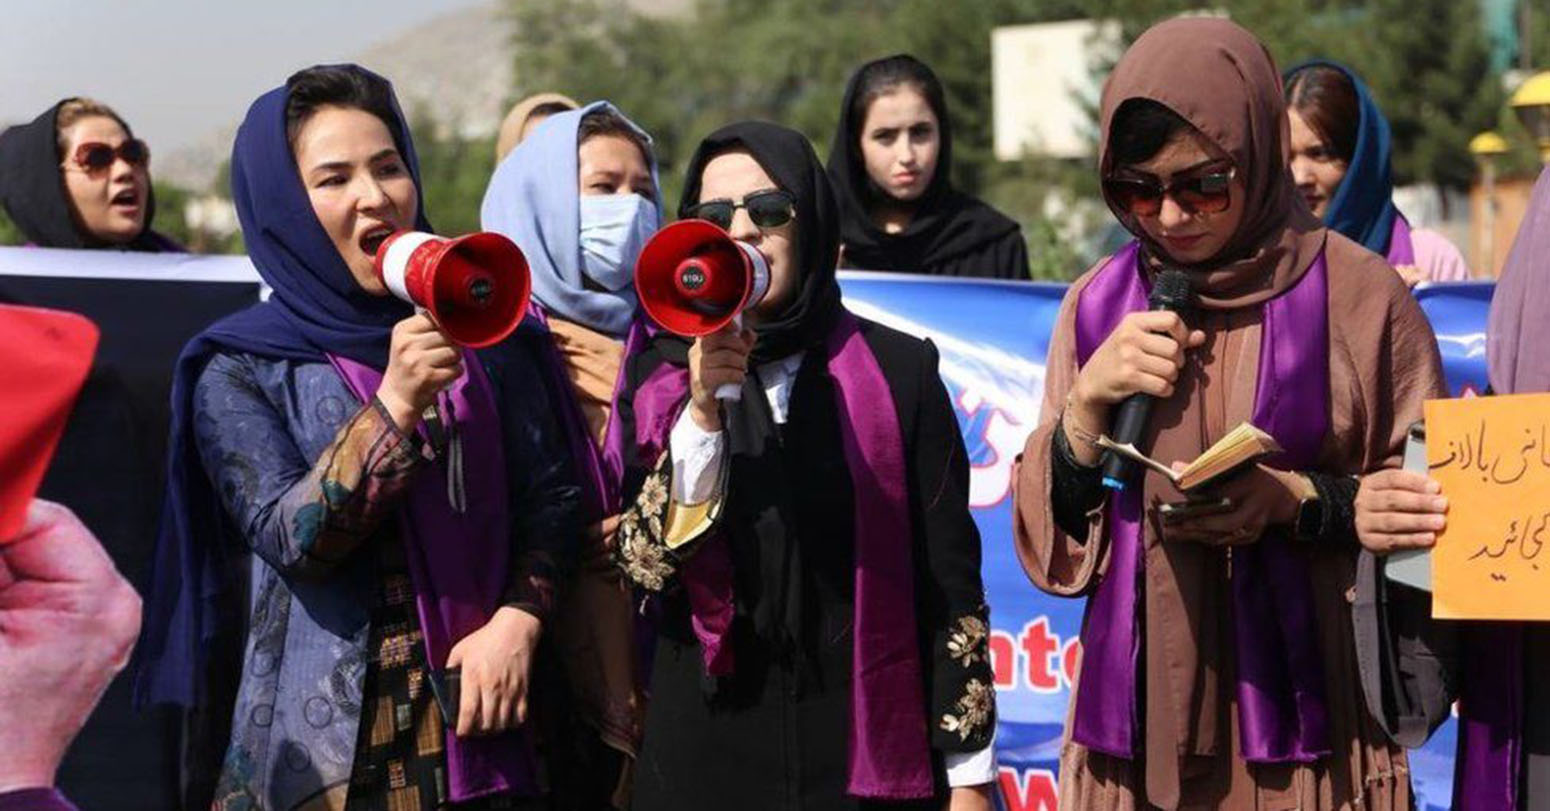 राजनीतिक र सामाजिक समावेशिता माग गर्दै अफगानिस्तानमा प्रदर्शन